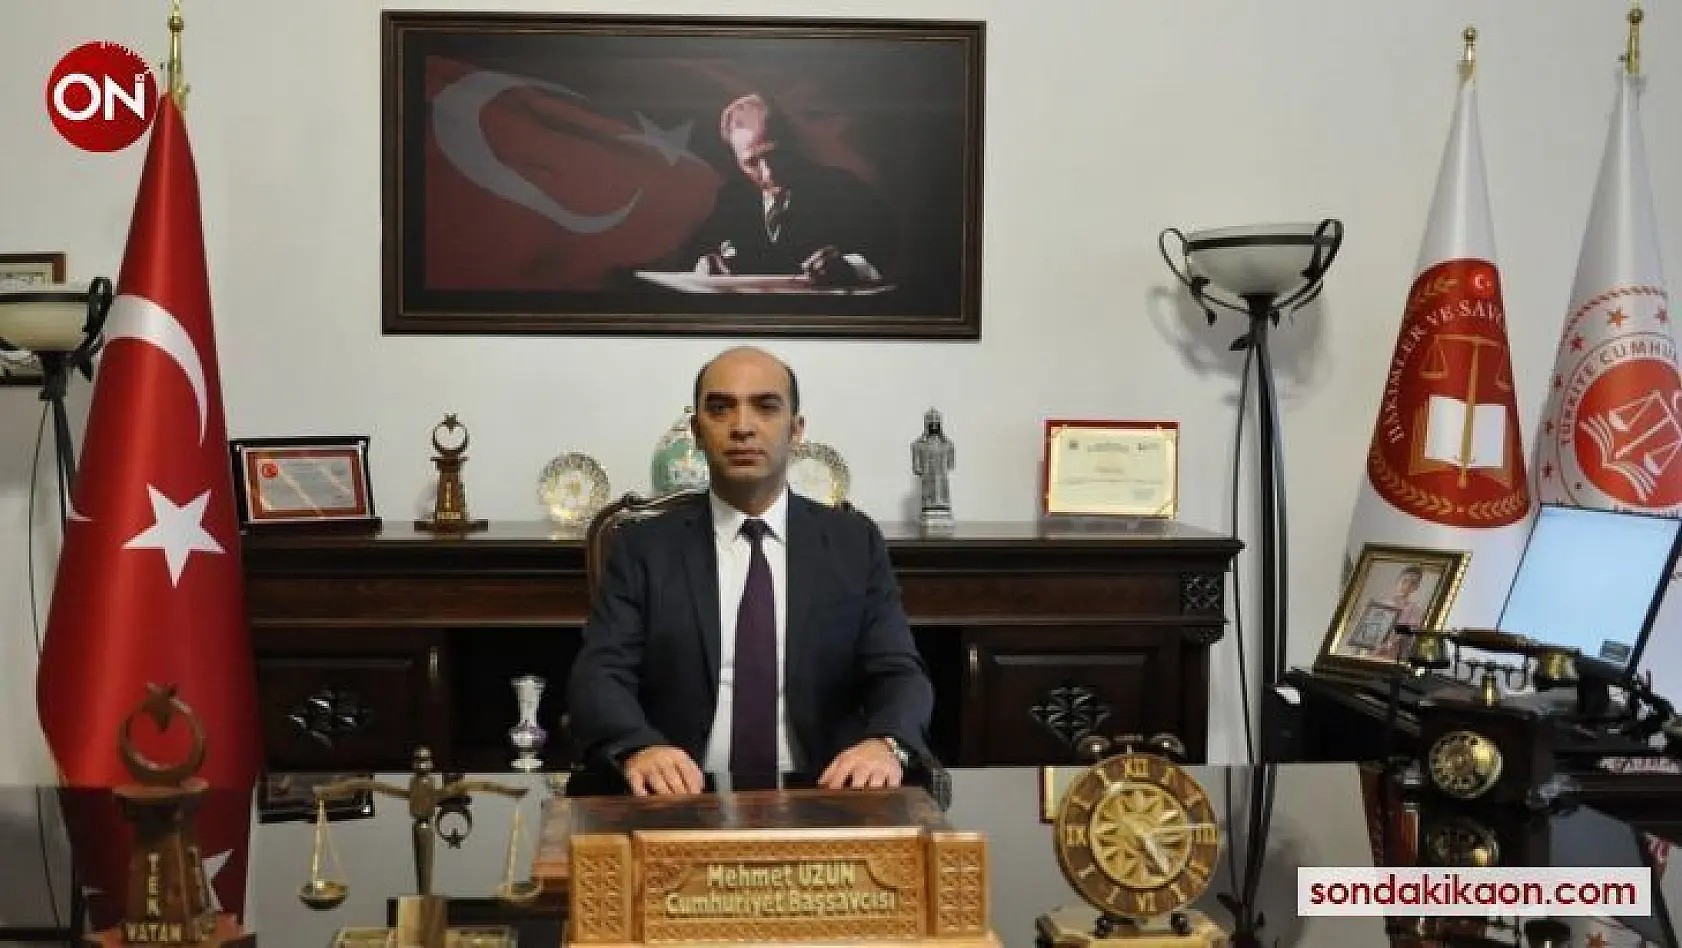 Kütahya Cumhuriyet Başsavcısı Uzun: 'Toplumsal barış ve huzurun en güçlü teminatı adalettir'